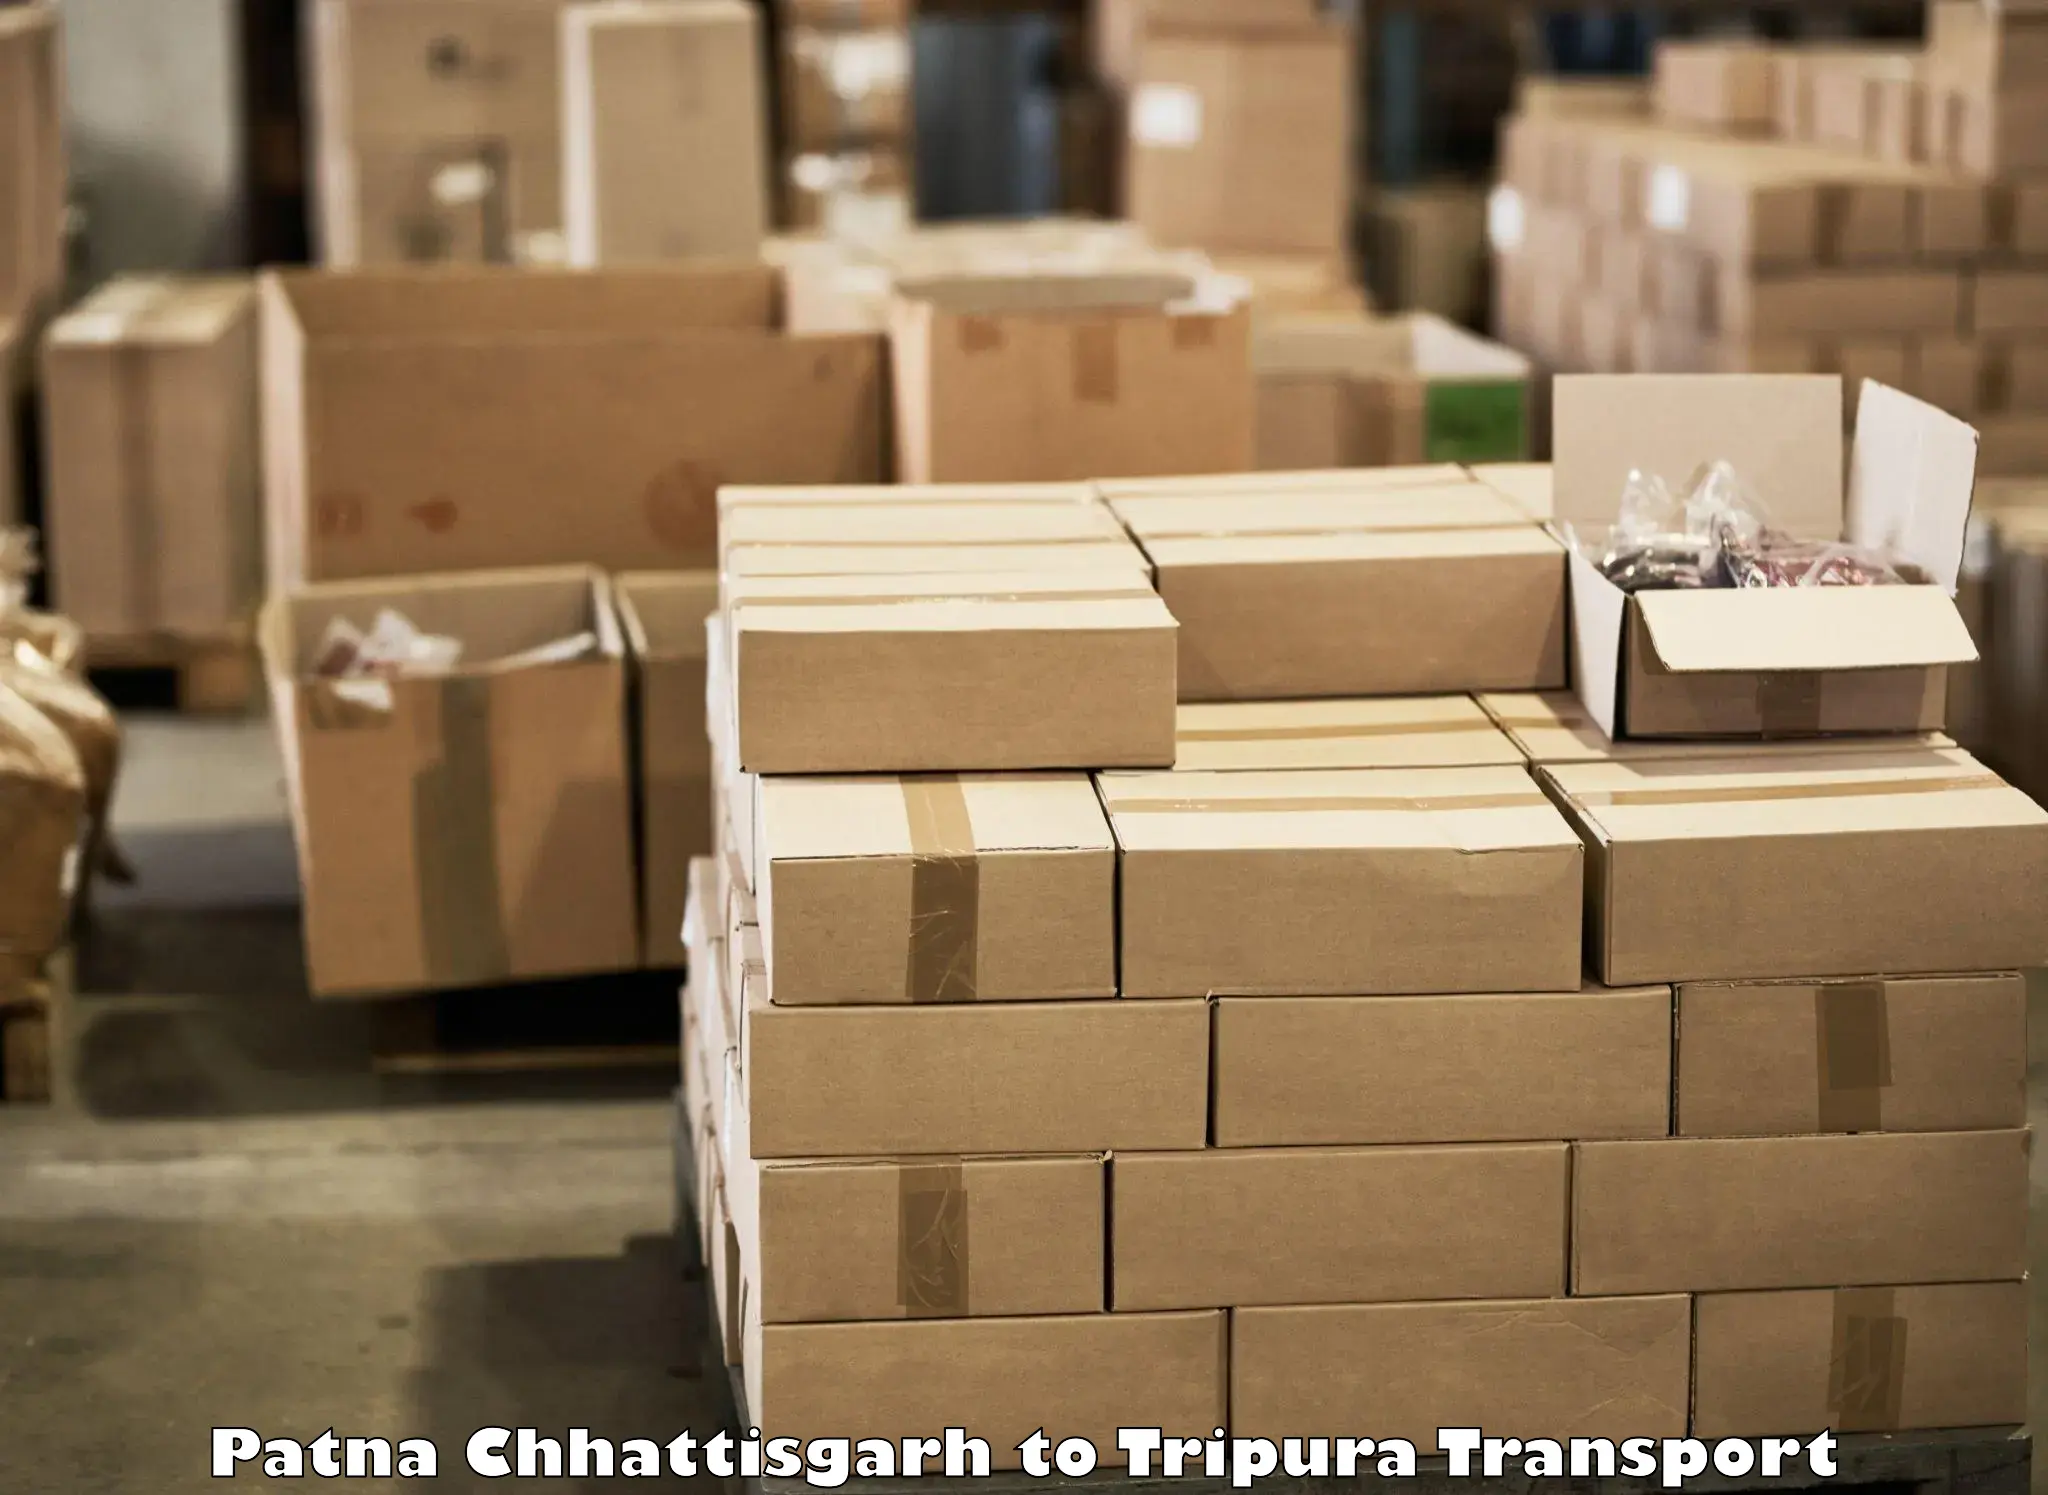 Pick up transport service Patna Chhattisgarh to Aambasa